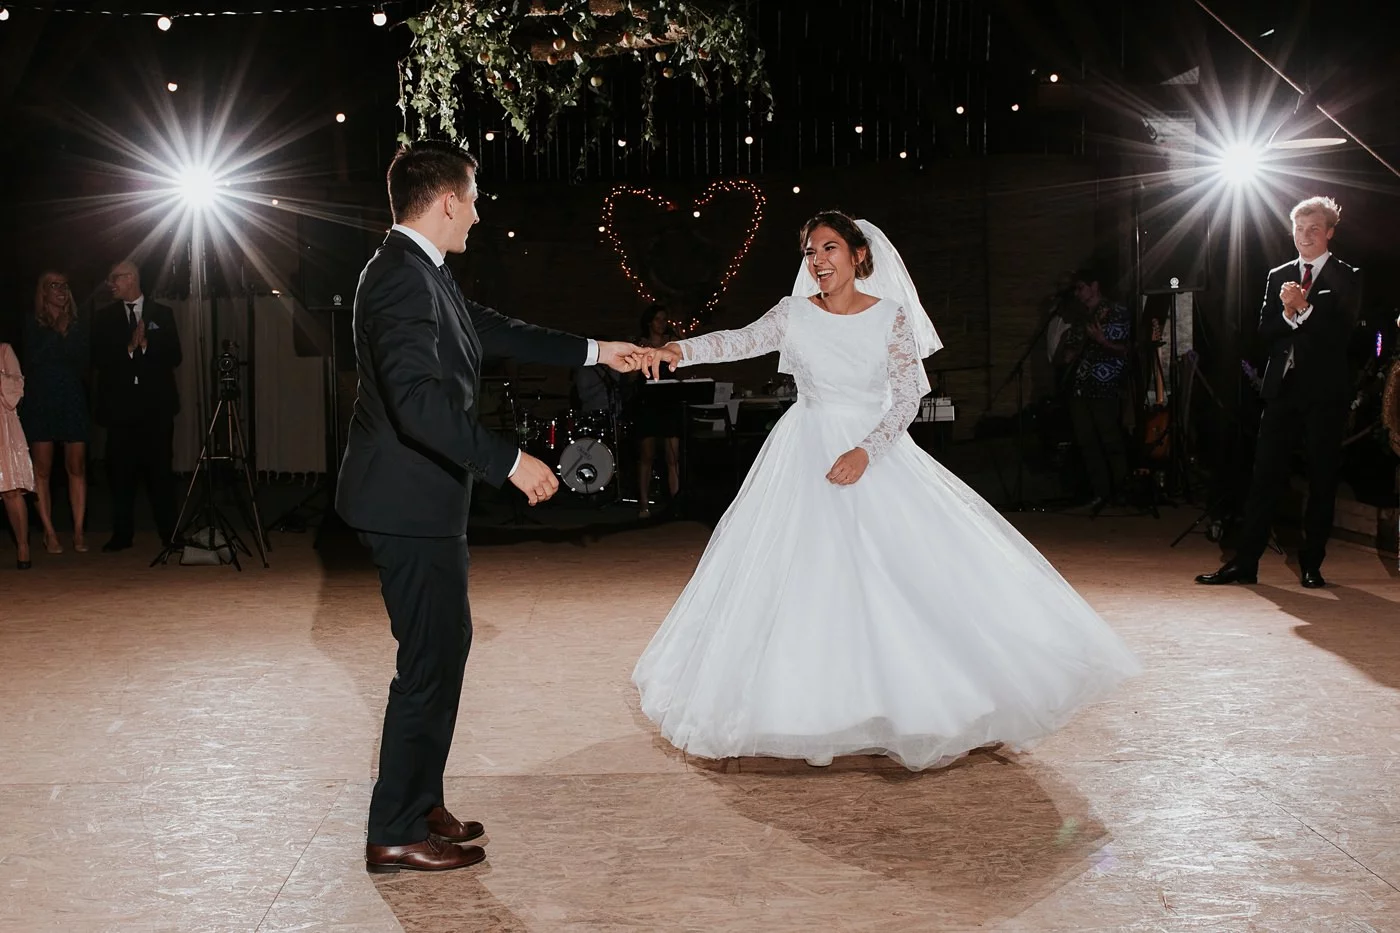 Dominika & Aleksander - Rustykalne wesele w stodole - Baborówko 107